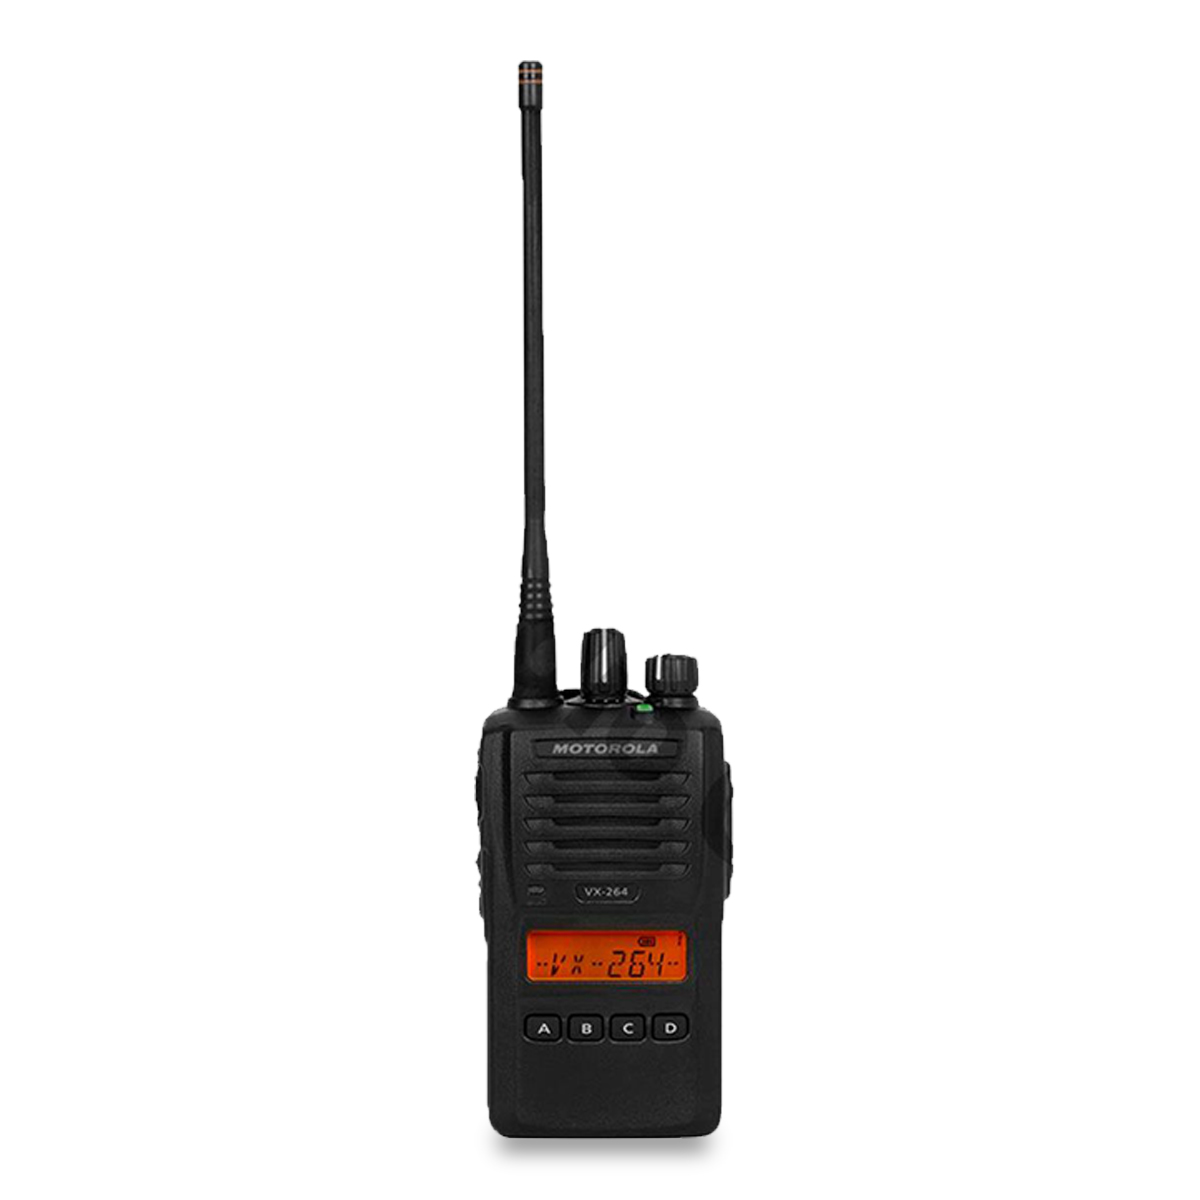 Radio Motorola VX-264 Analógico VHF 136-174 MHz